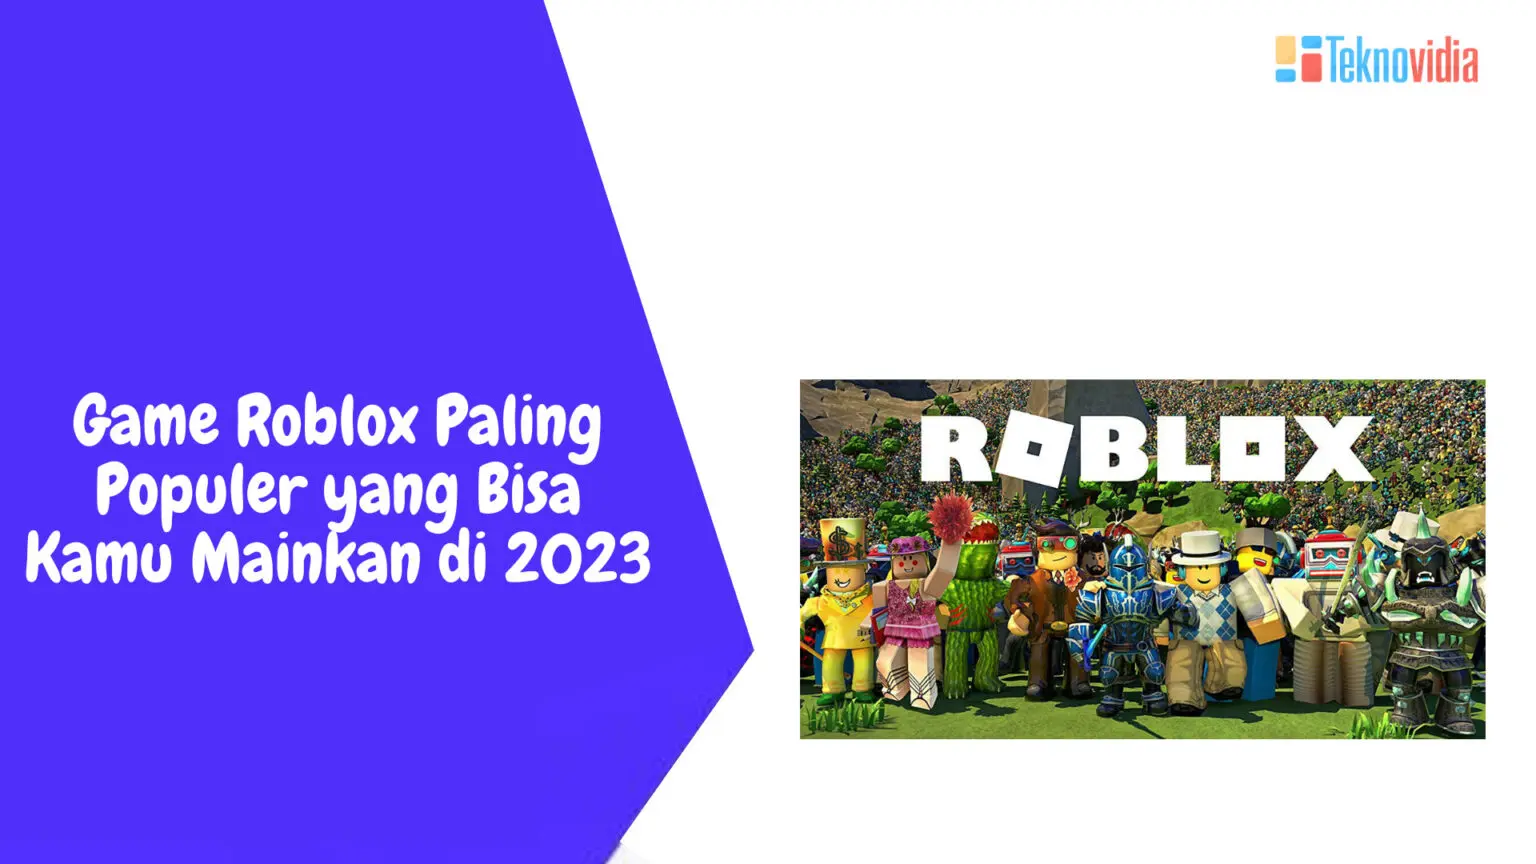 Game Roblox Paling Populer yang Bisa Kamu Mainkan di 2023